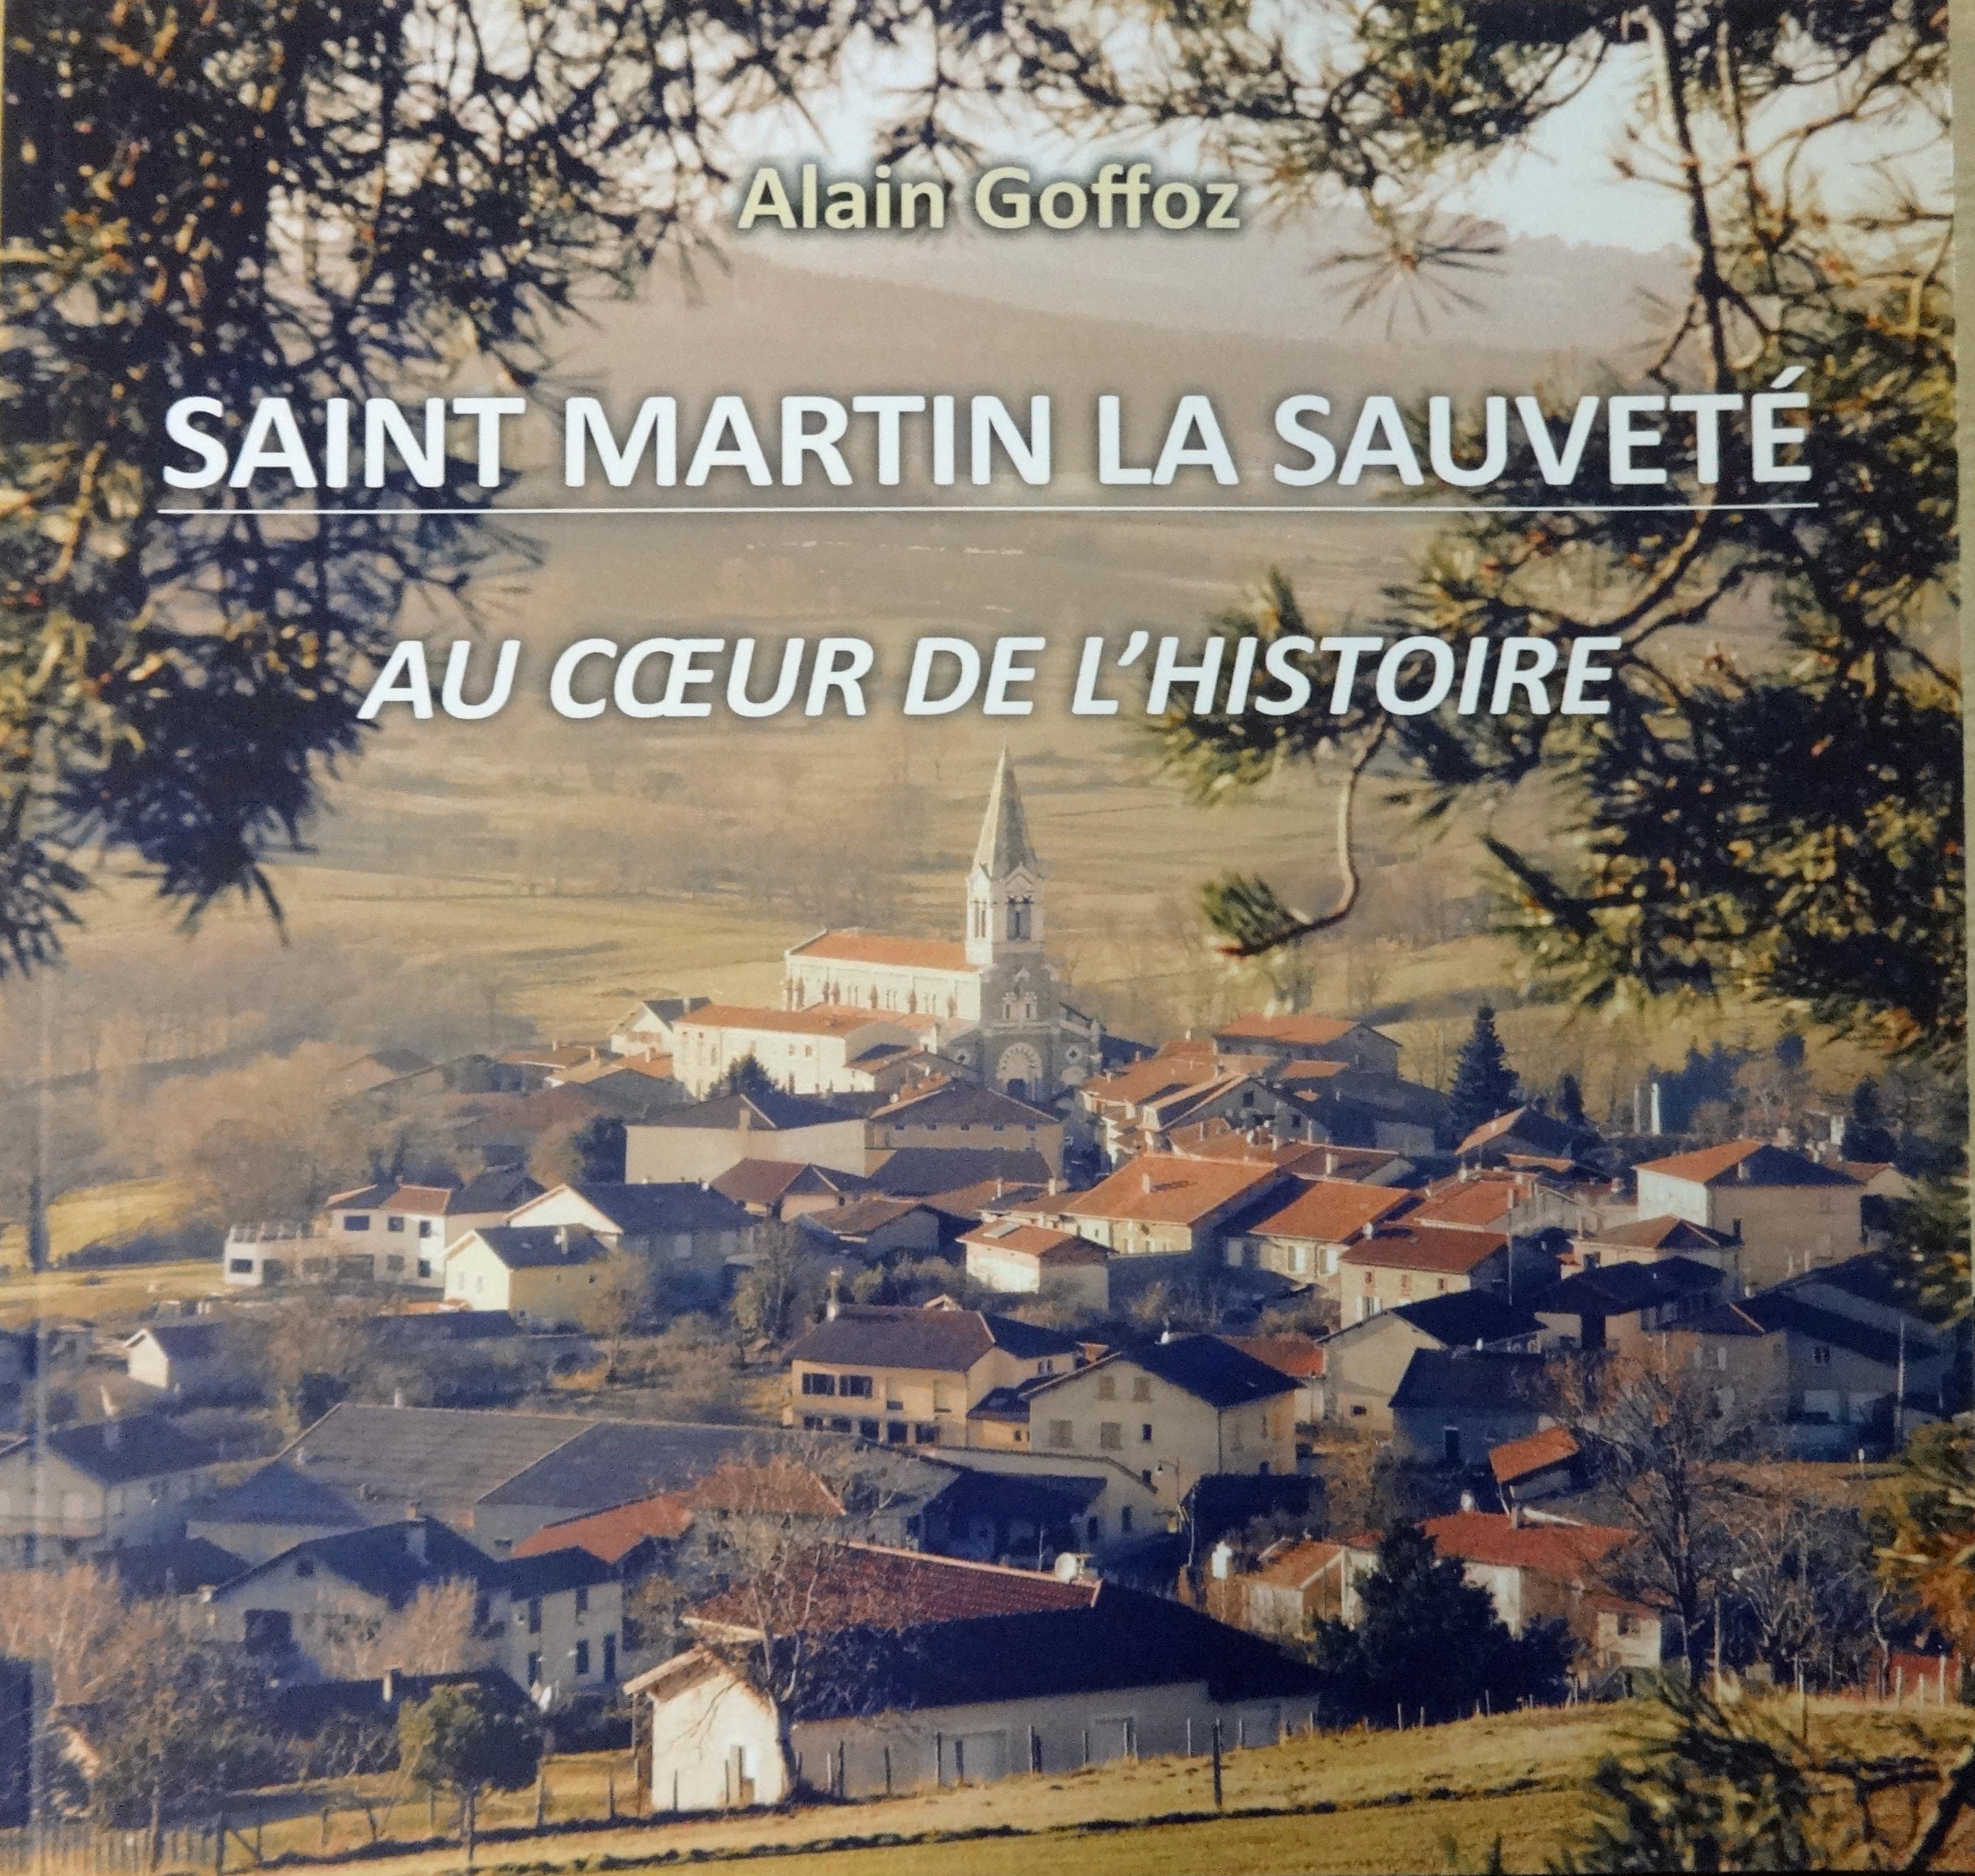 Saint Martin la Sauveté